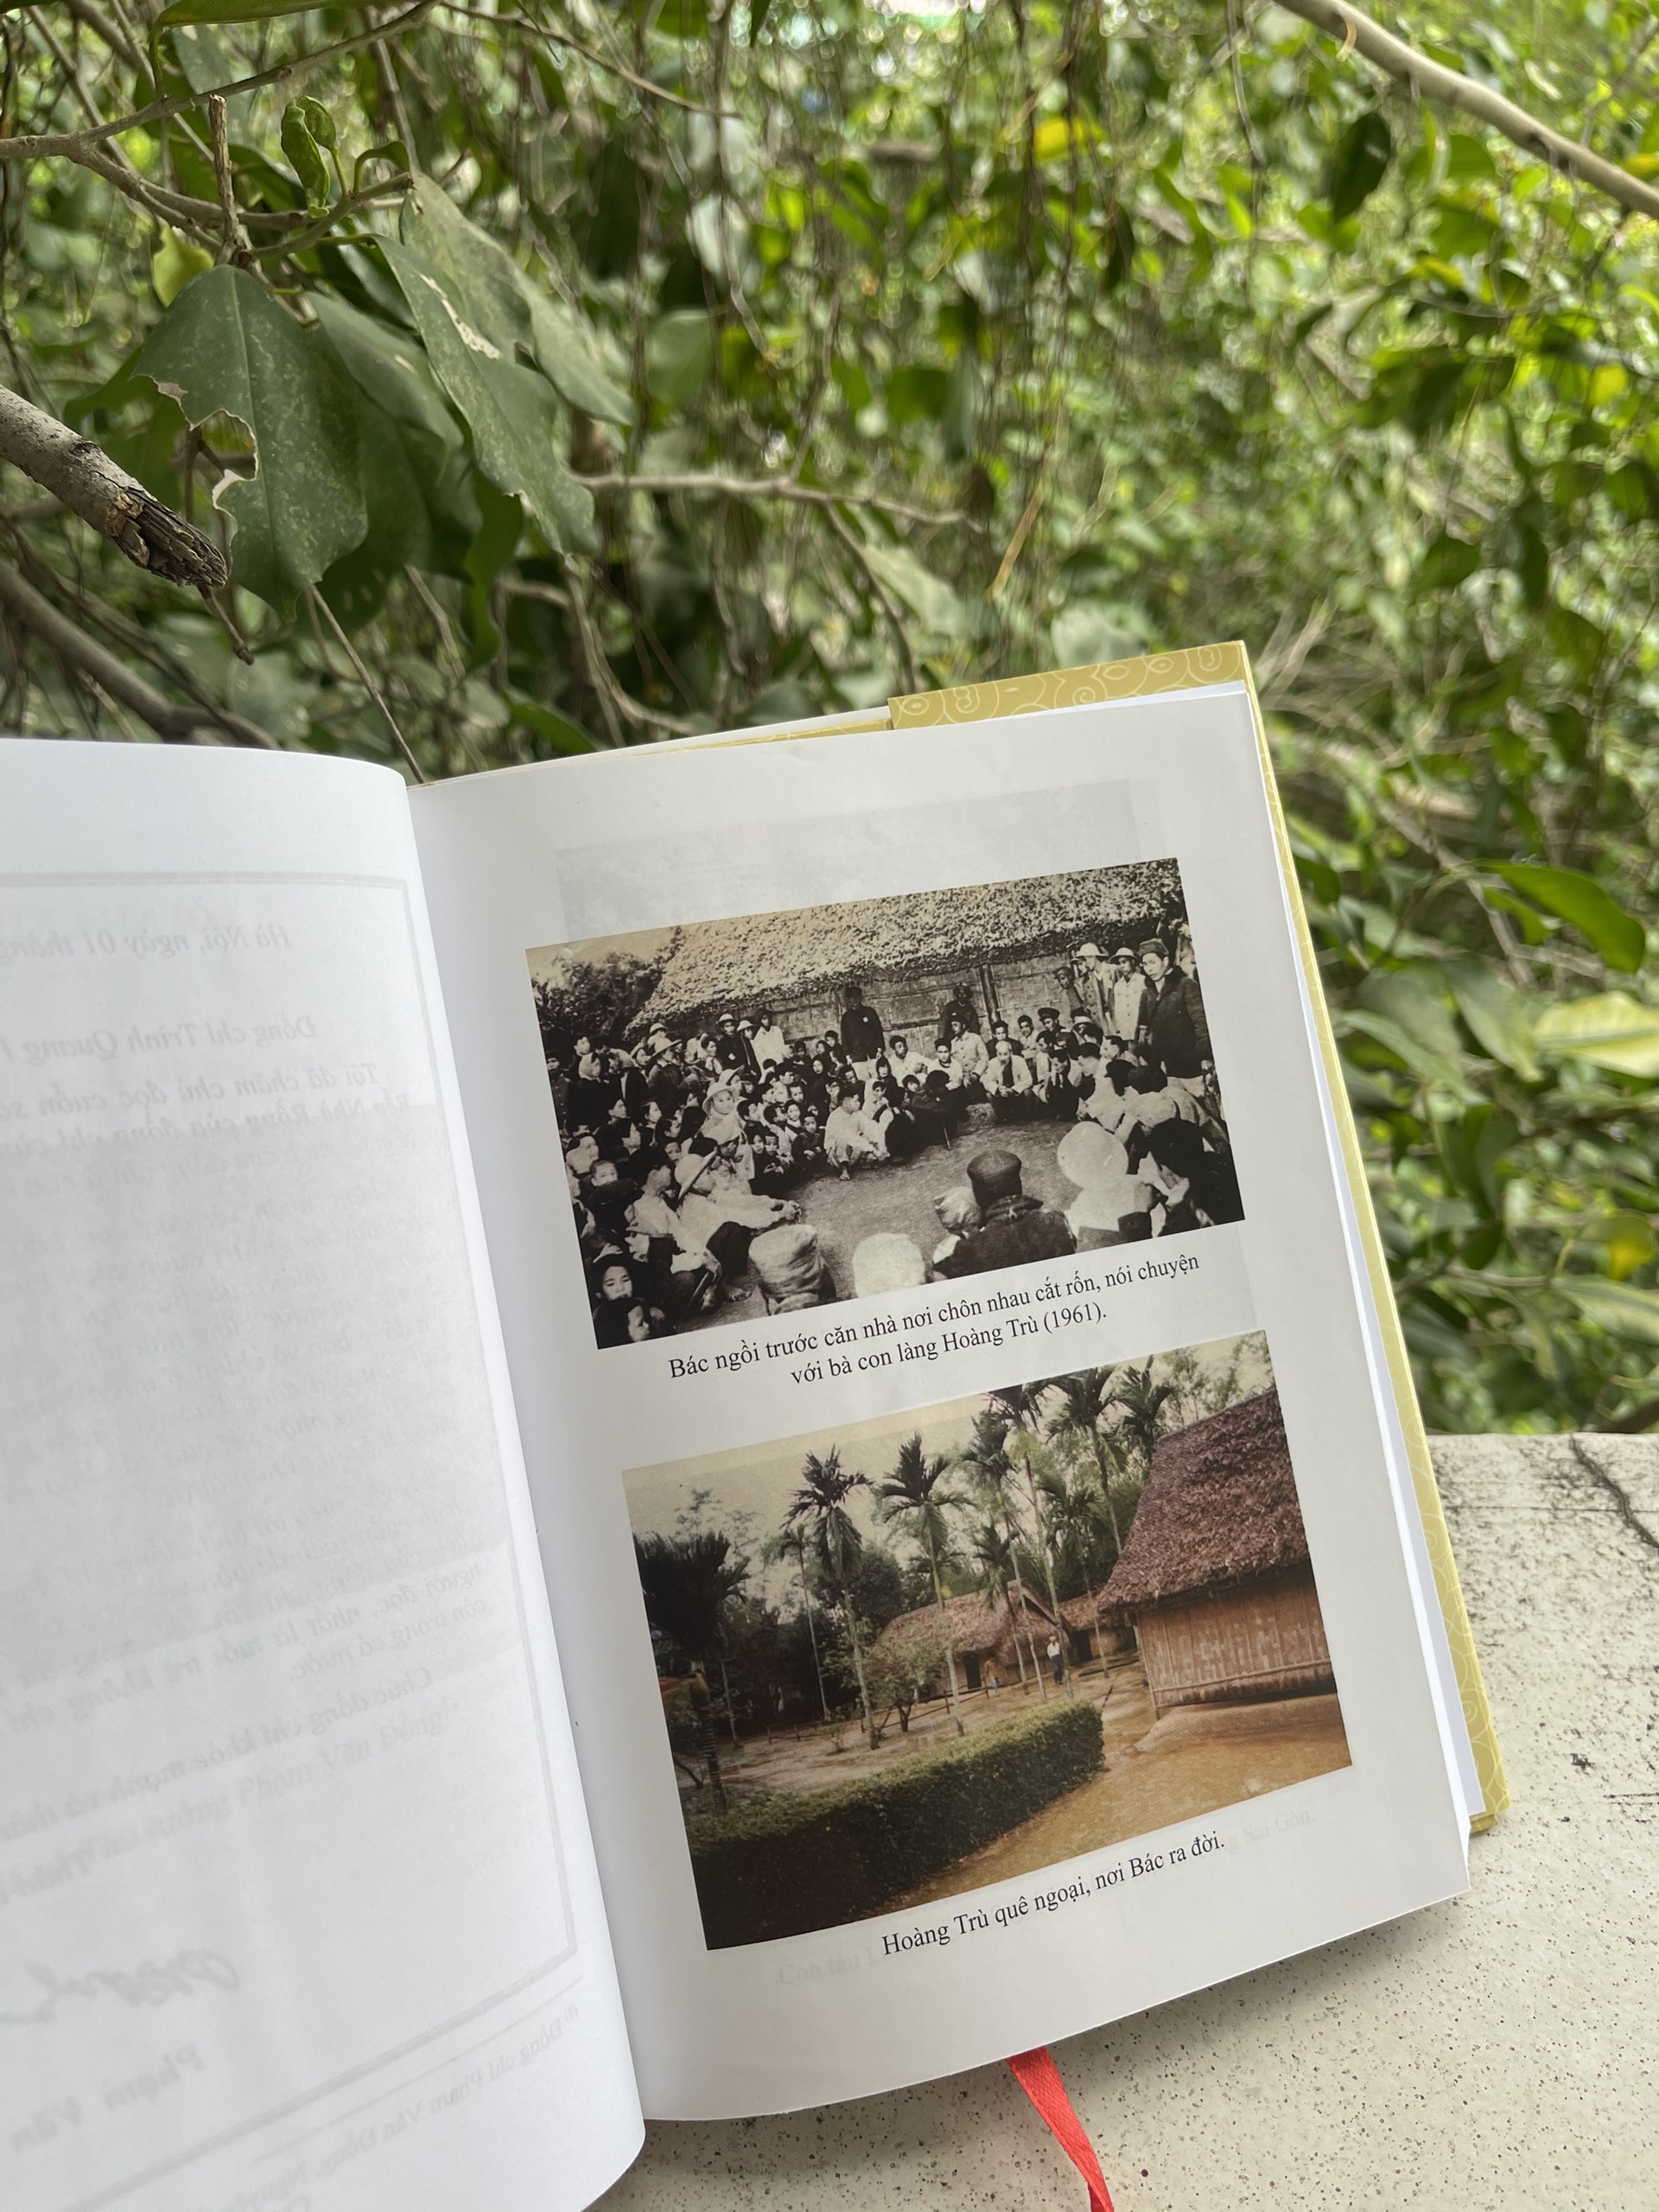 Hình ảnh Bác Hồ ngồi trước căn nhà, nơi chôn rau cắt rốn, nói chuyện với bà con làng Hoàng Trù (1961)